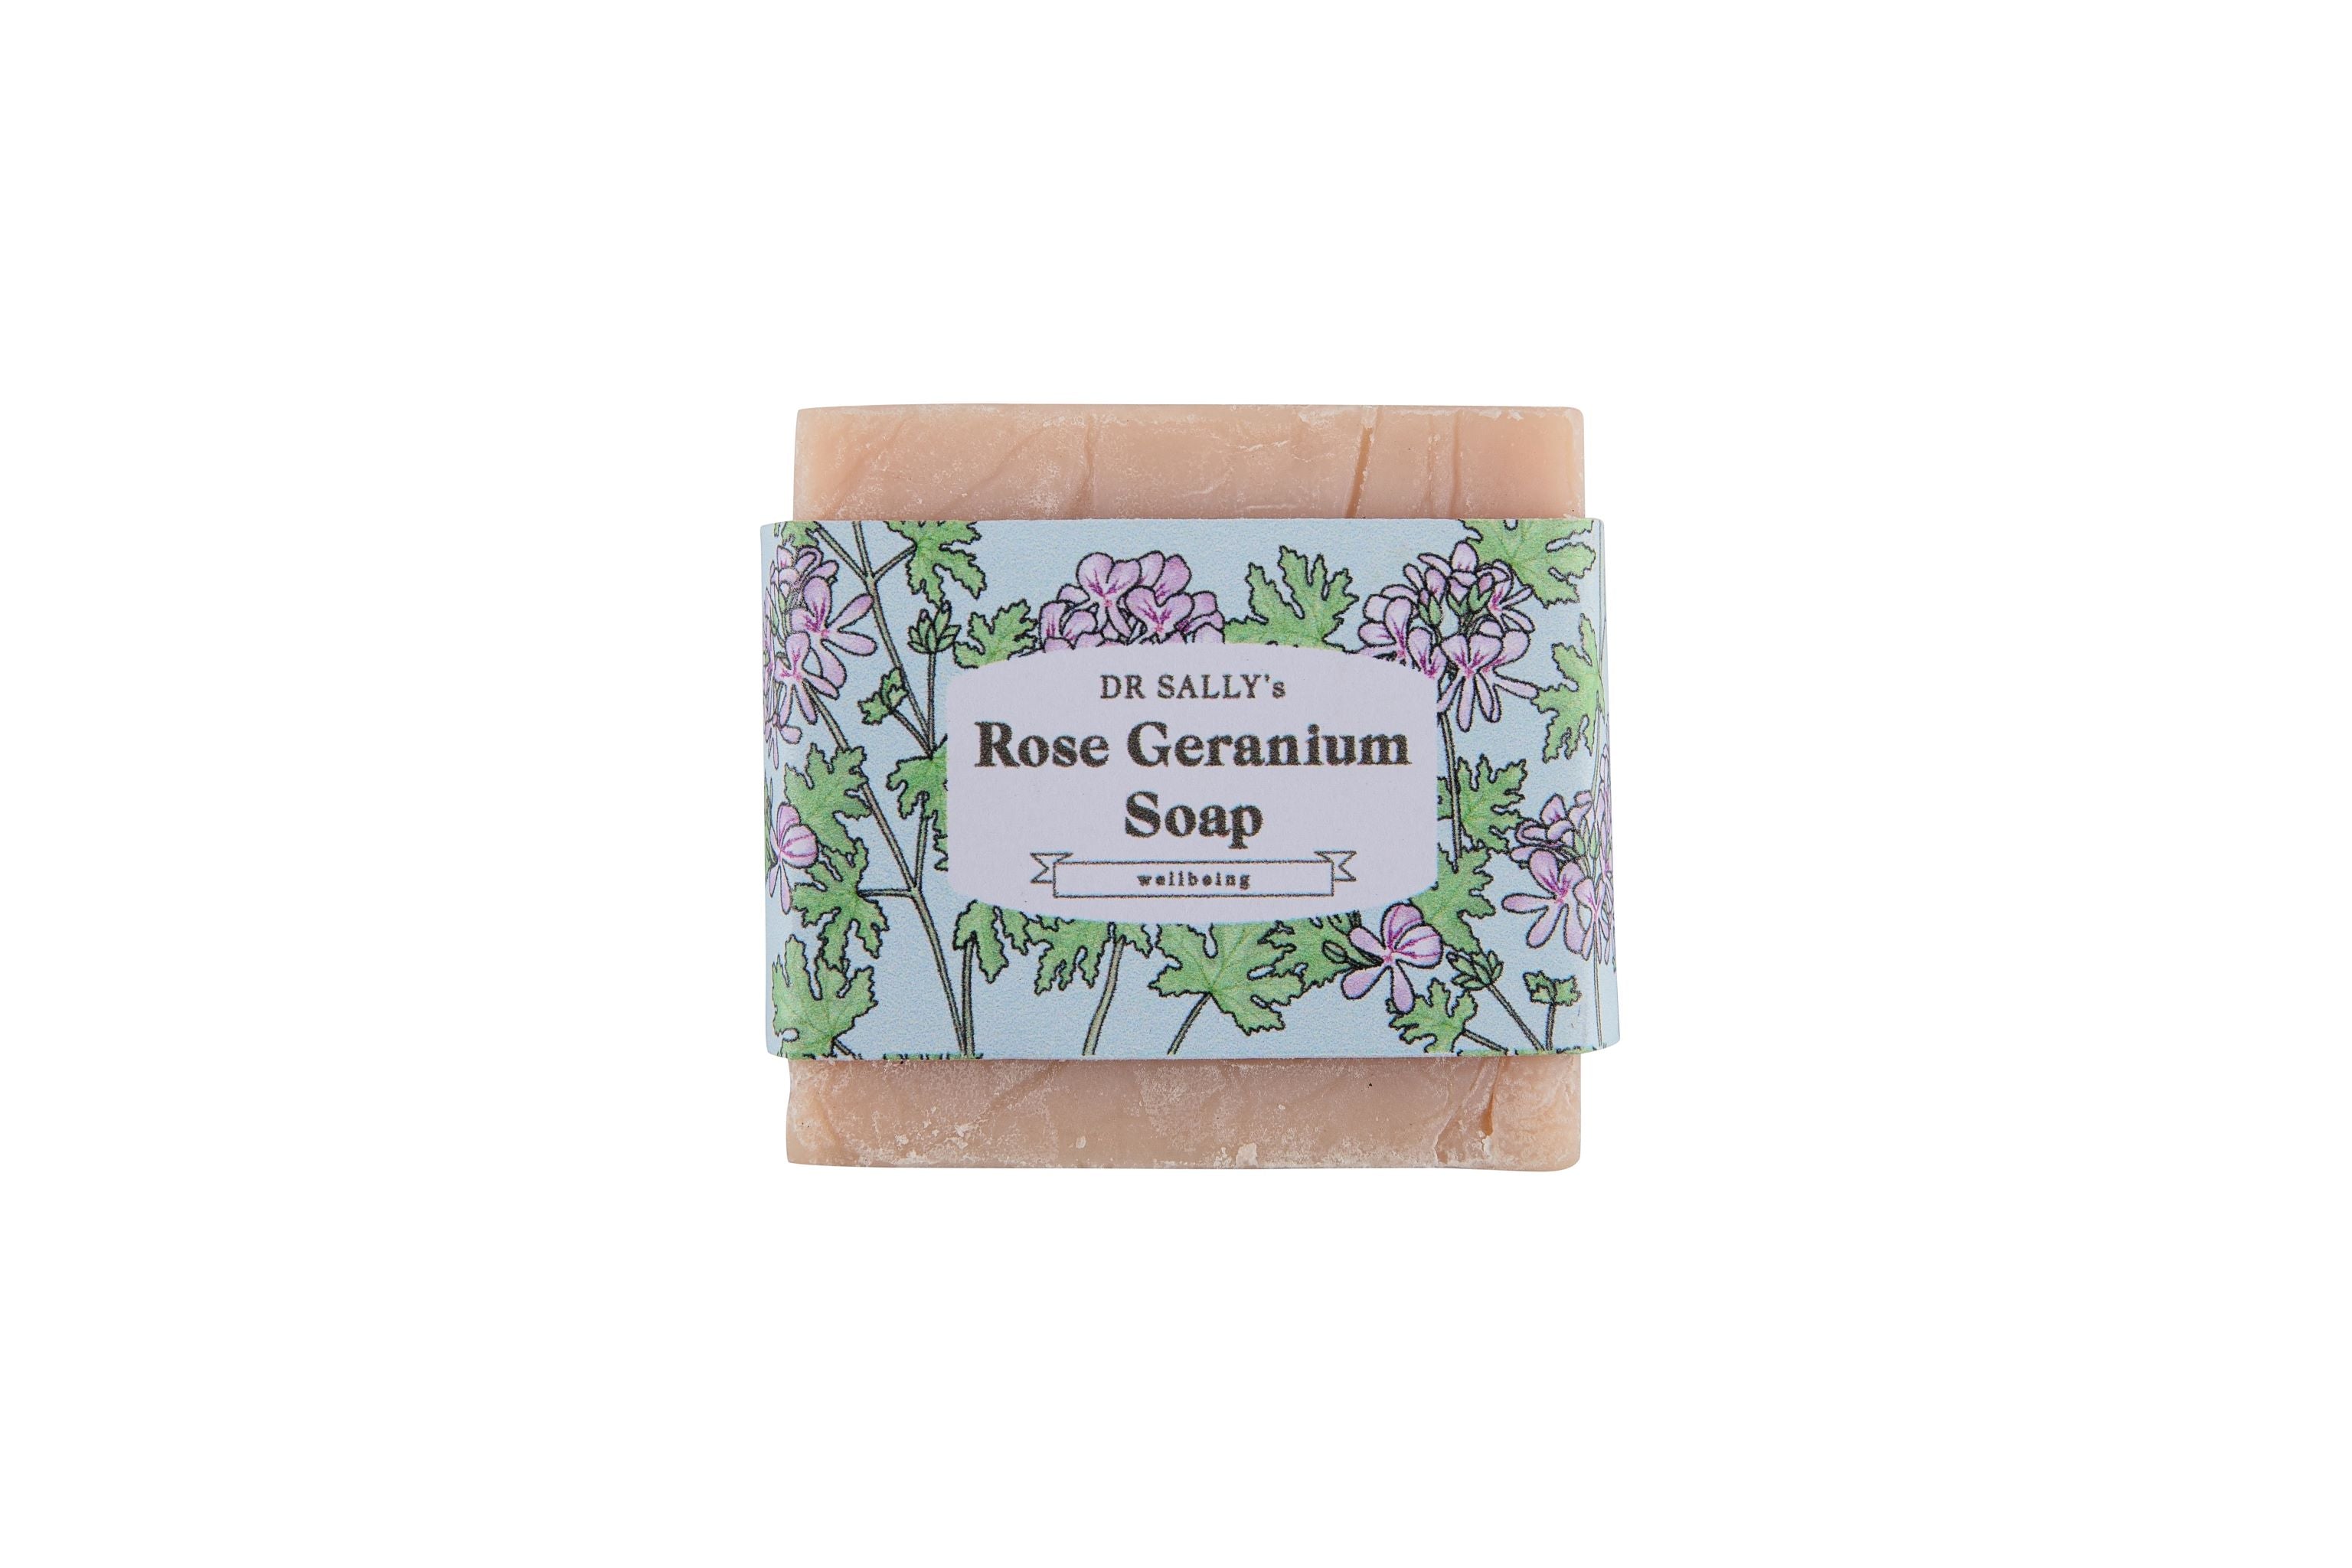 Dr Sally's Rose Geranium Soap